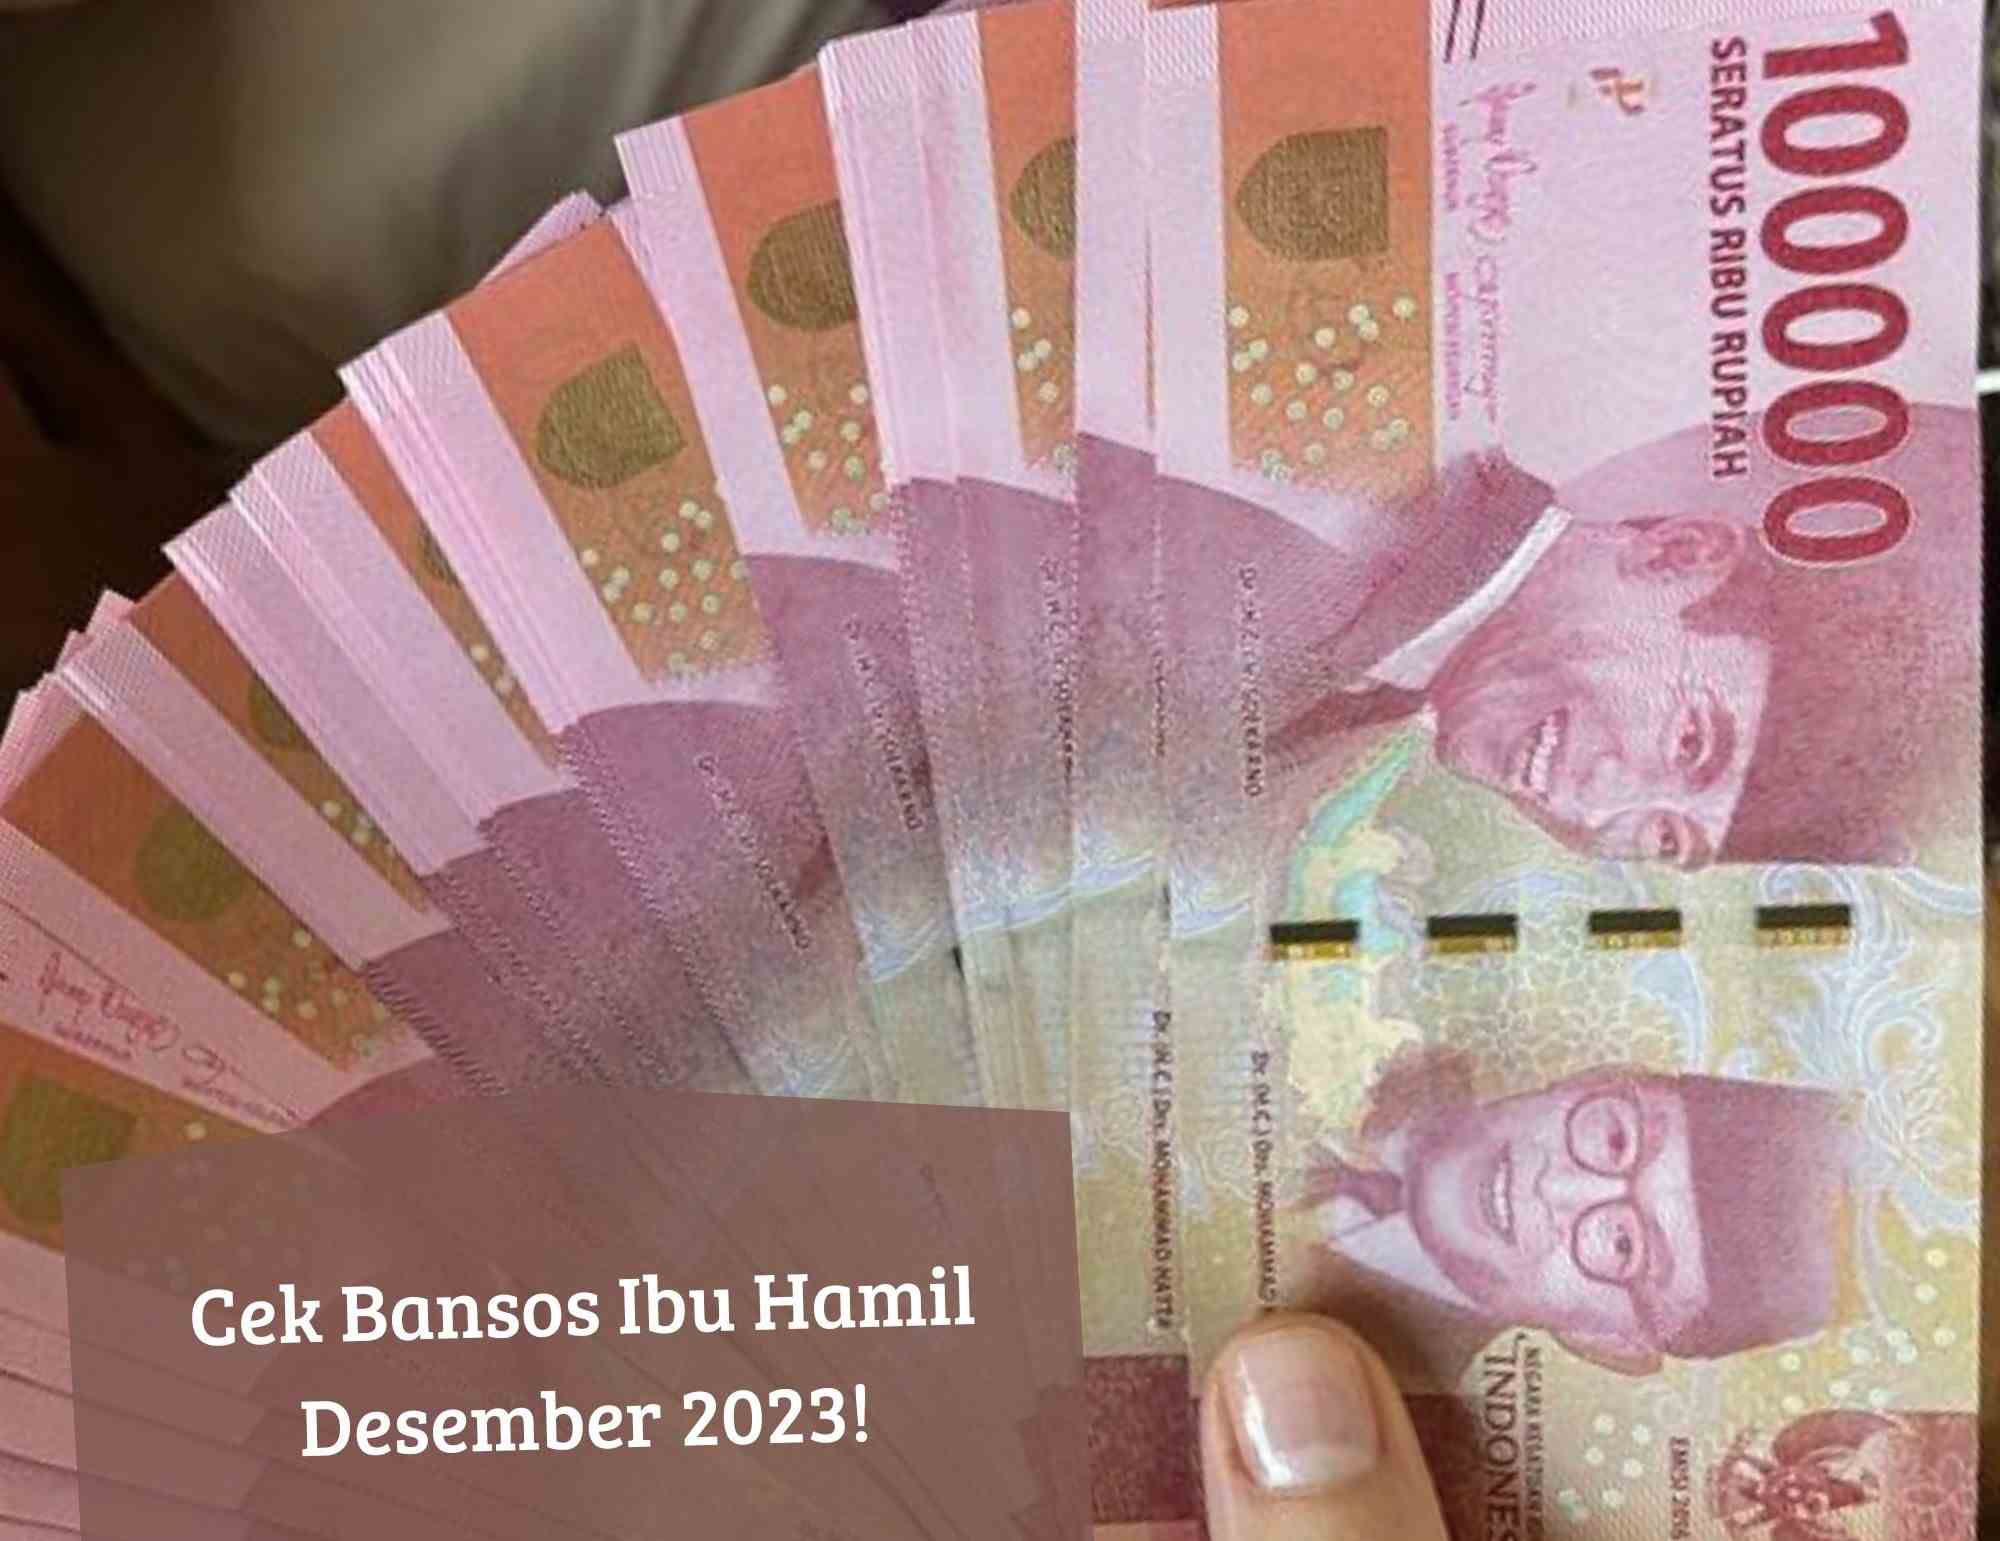 Ibu Hamil Auto Dapat Uang Bansos Desember 2023, Cek Syarat dan Penerima via Online! Cair Rp750 Ribu